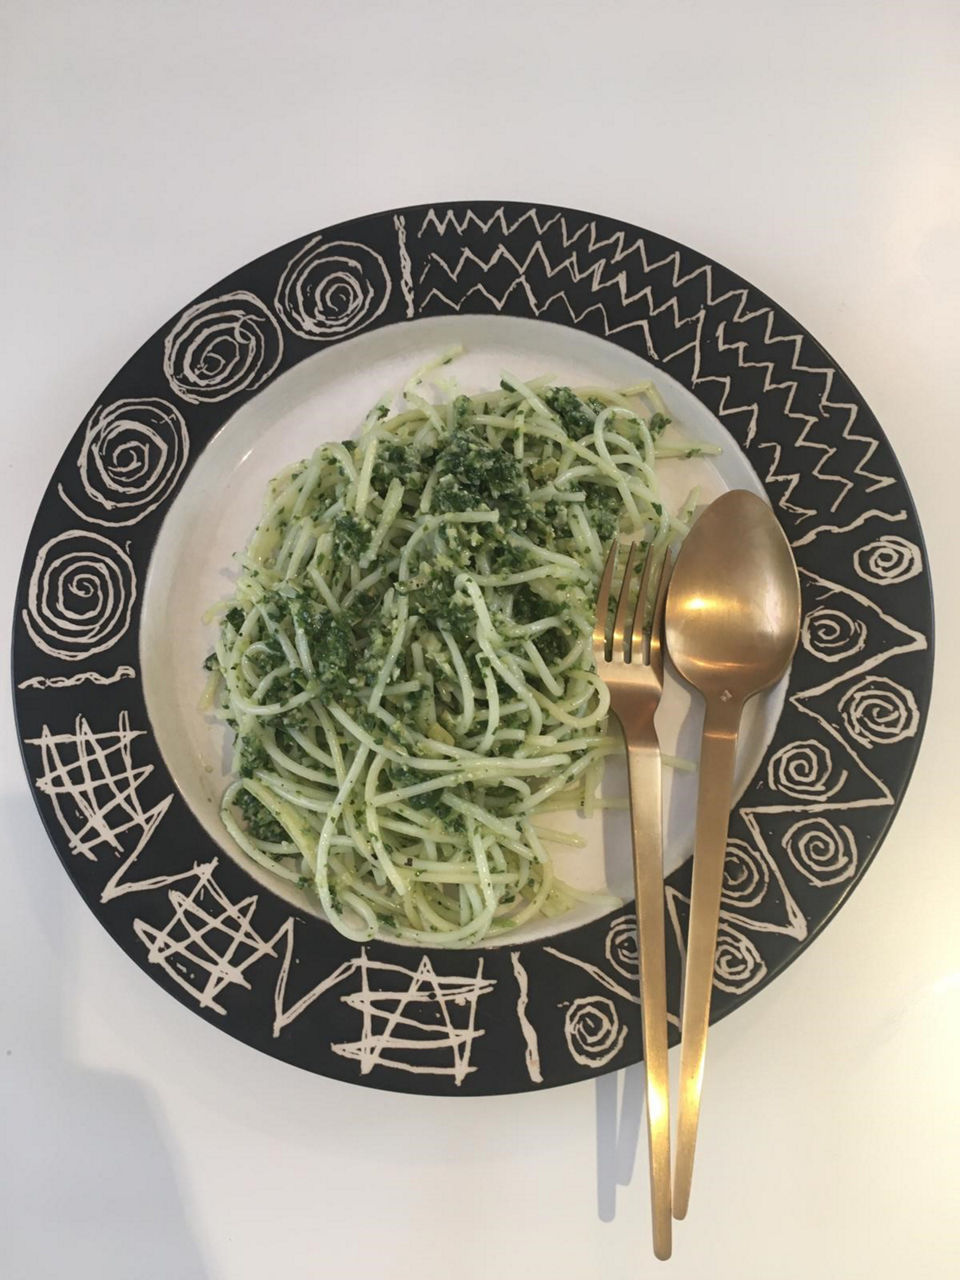 Spinach and artichoke spaghetti